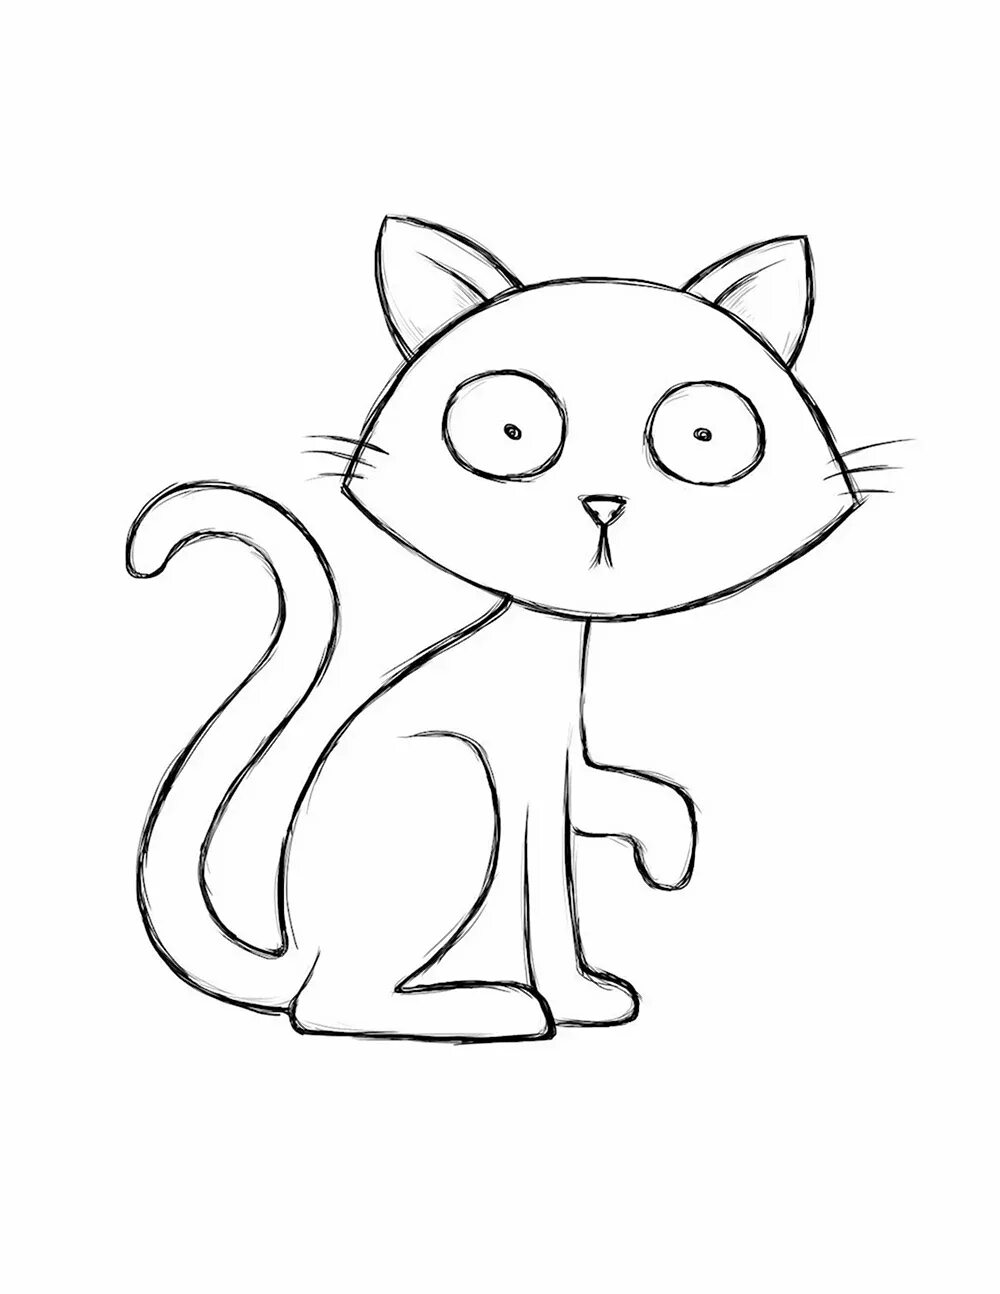 Картинки нарисованные котики легкие. Картинки кошек для срисовки. Кошка рисунок легкий для срисовки. Рисунки котов для срисовки. Рисунок кошки для срисовки легко.